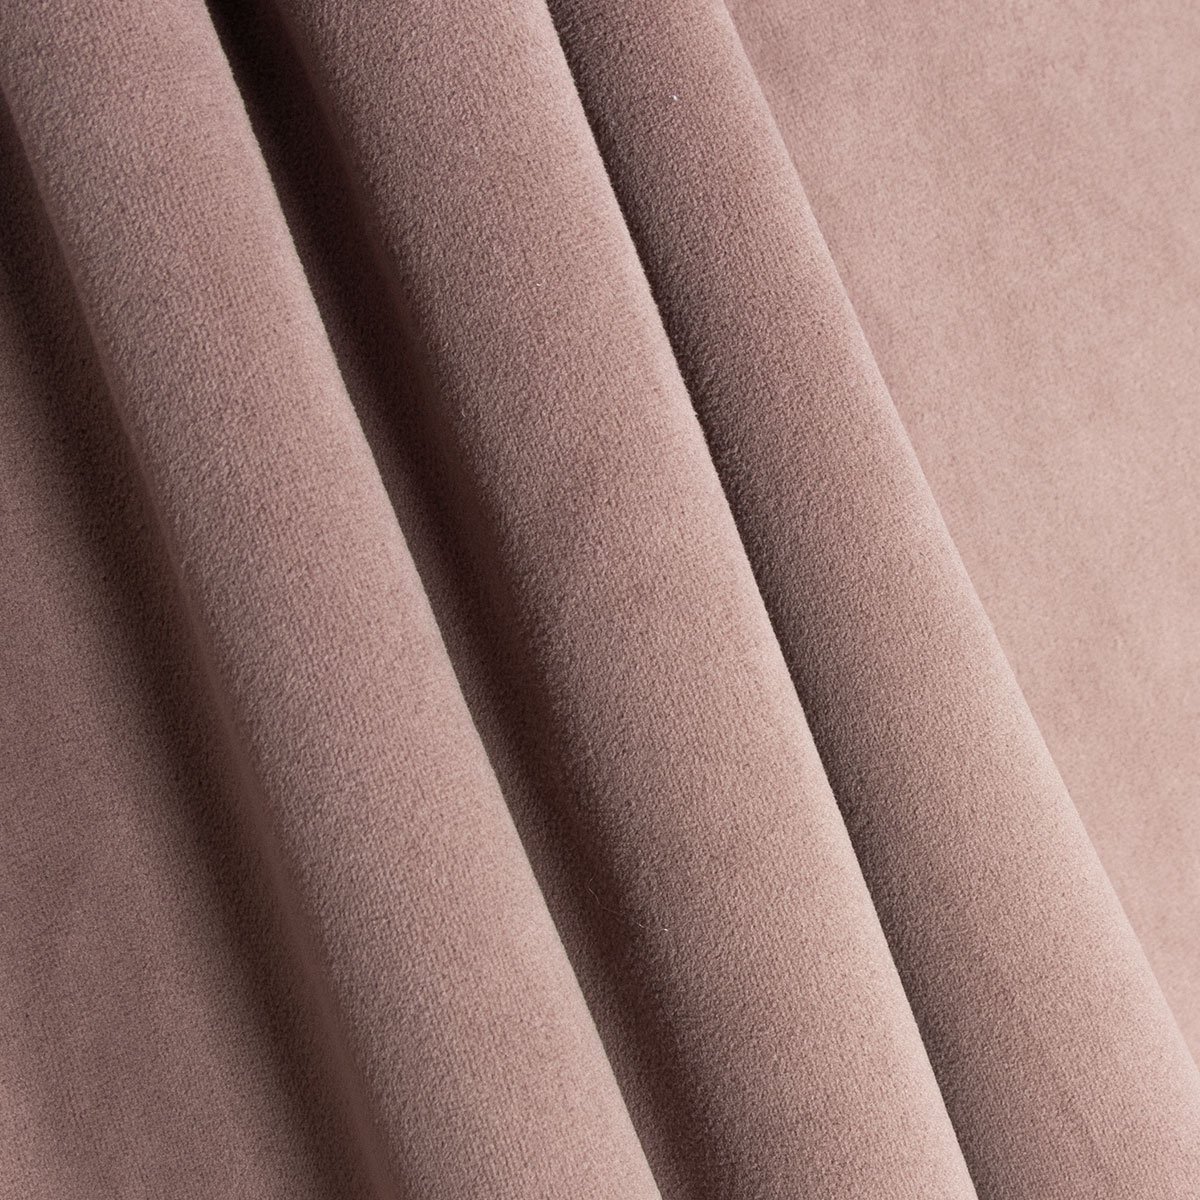 Velvet Fabric for Upholstery: A Guide to the Best Types of Velvet